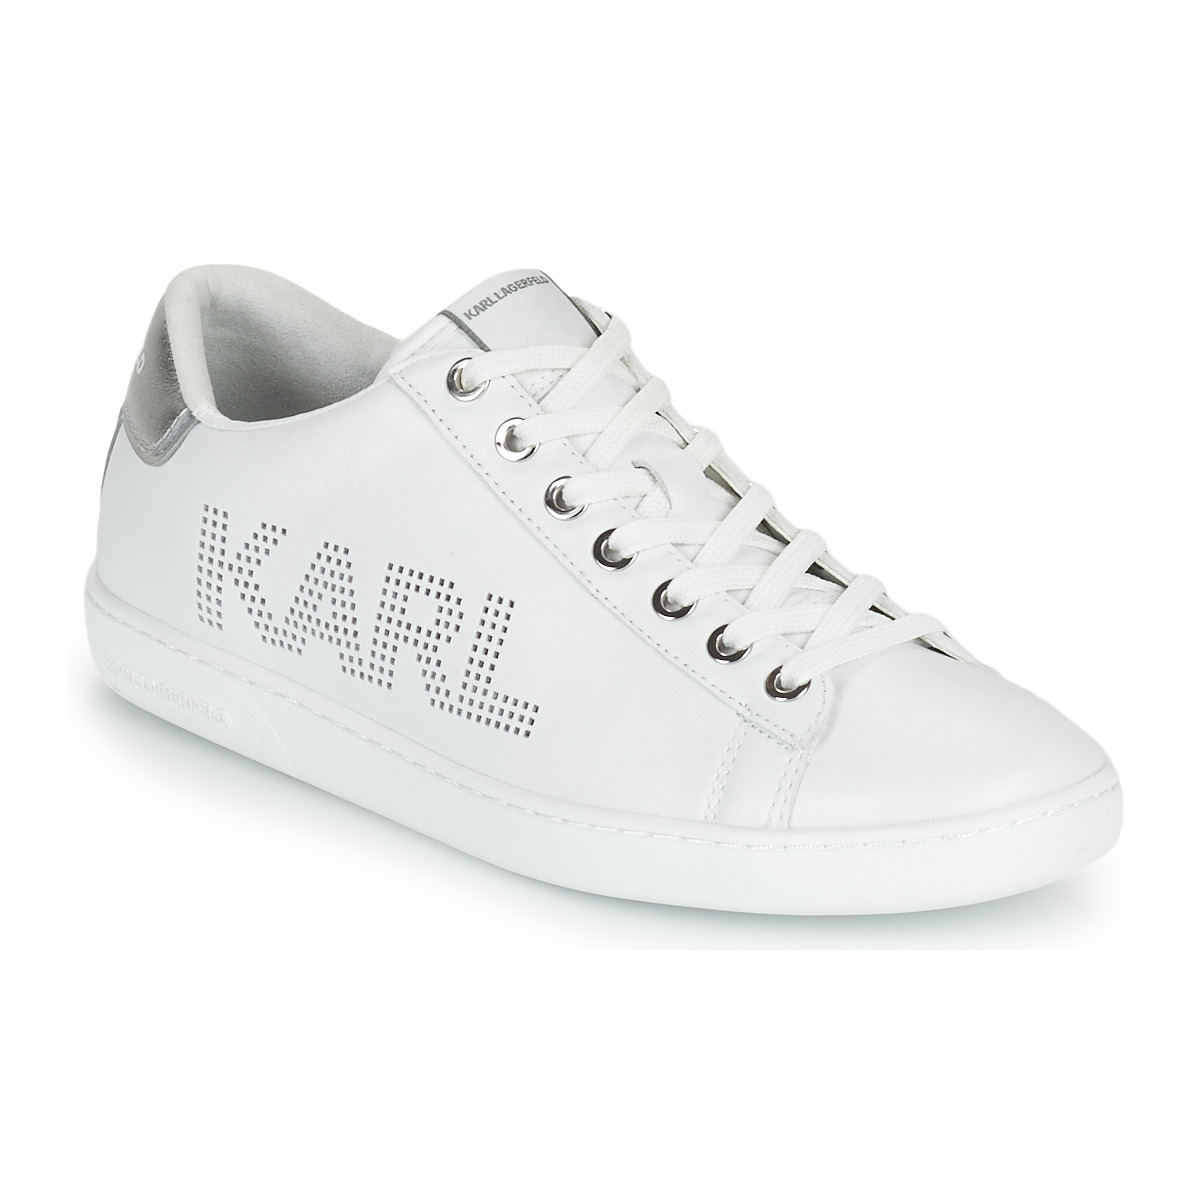 Spartoo - Woman Sneakers White Karl Lagerfeld GOOFASH